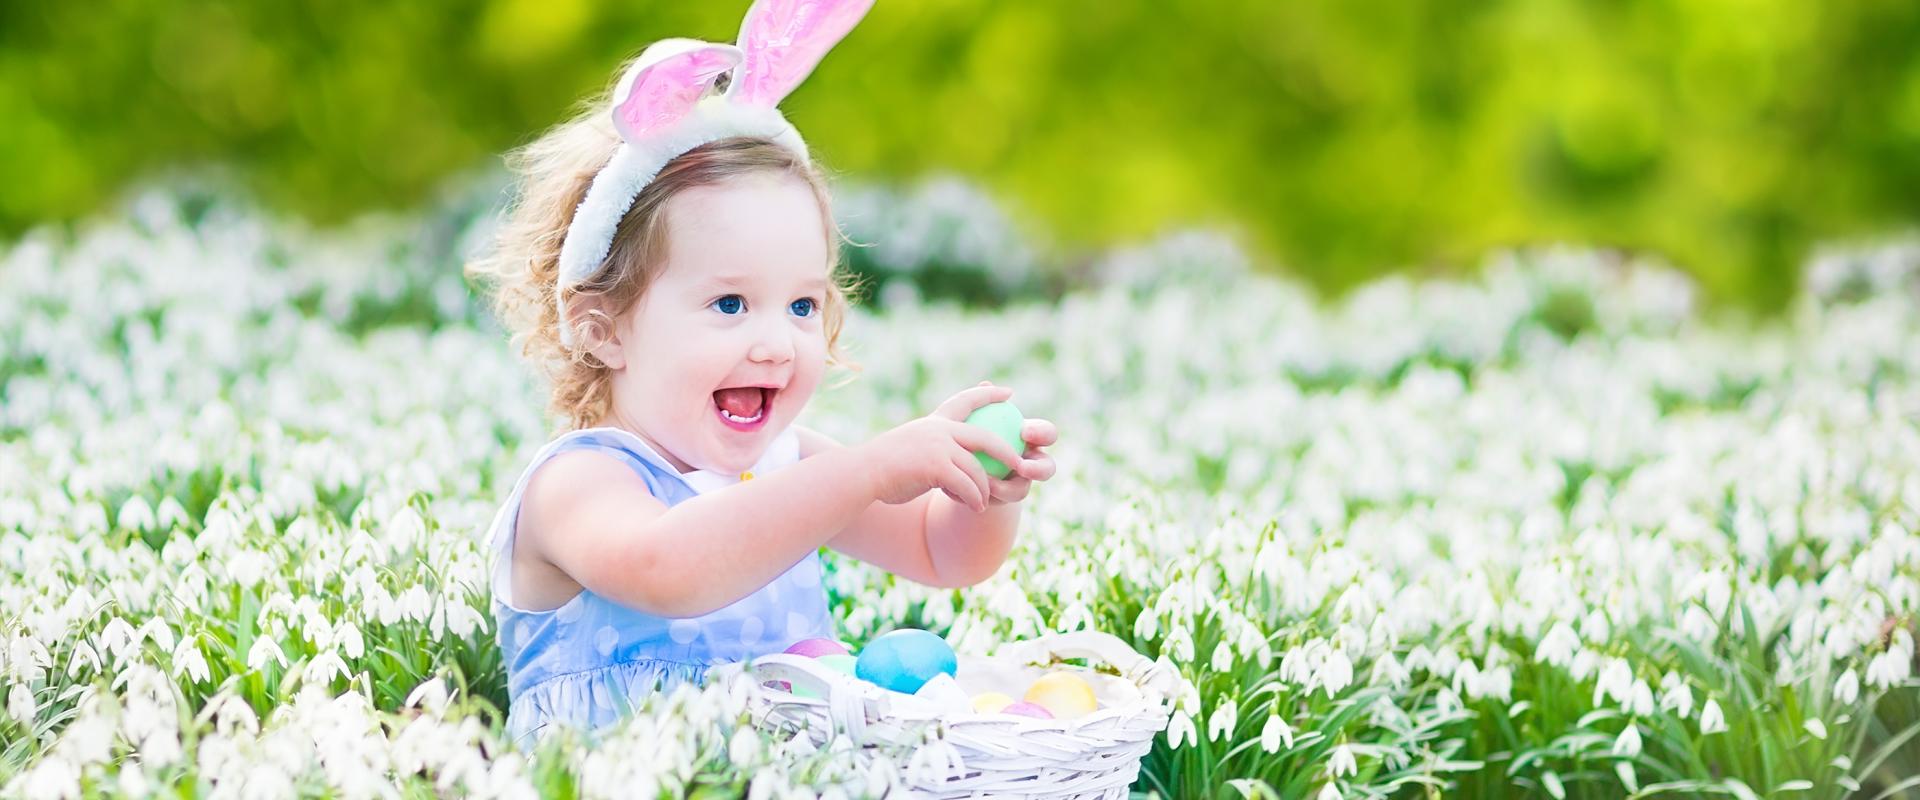 merch ifanc yn eistedd mewn dôl, gydag wyau Pasg a chlustiau bwni / young girl sitting in a meadow, with Easter eggs and bunny ears